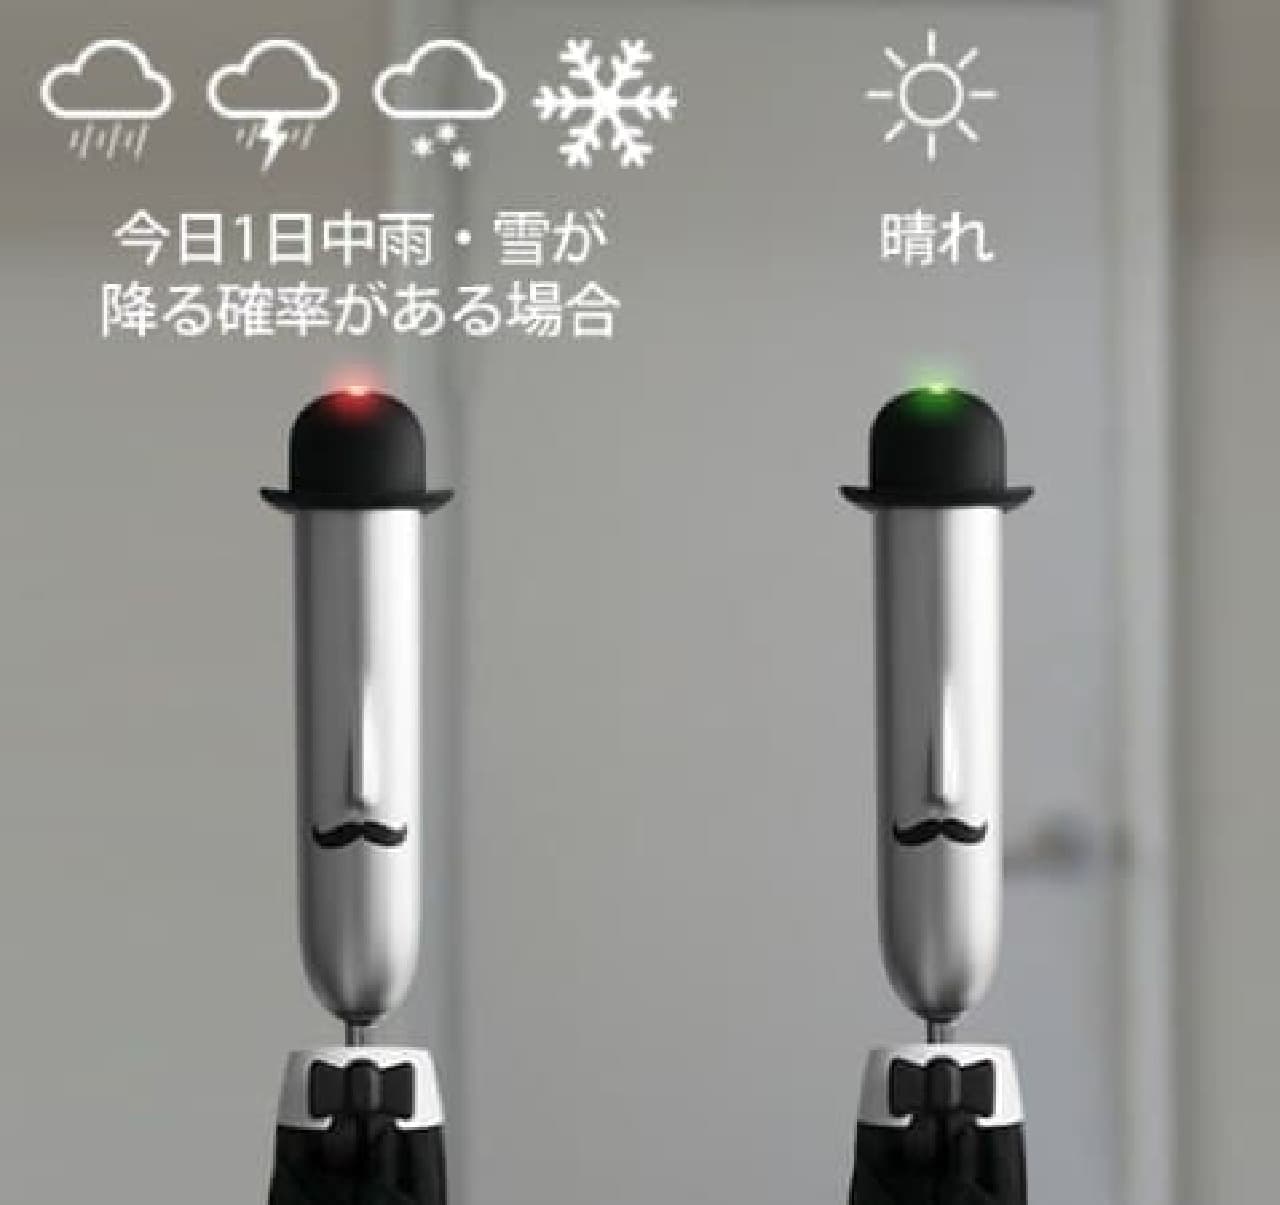 Smart umbrella "OPUS ONE SMART UMBRELLA"